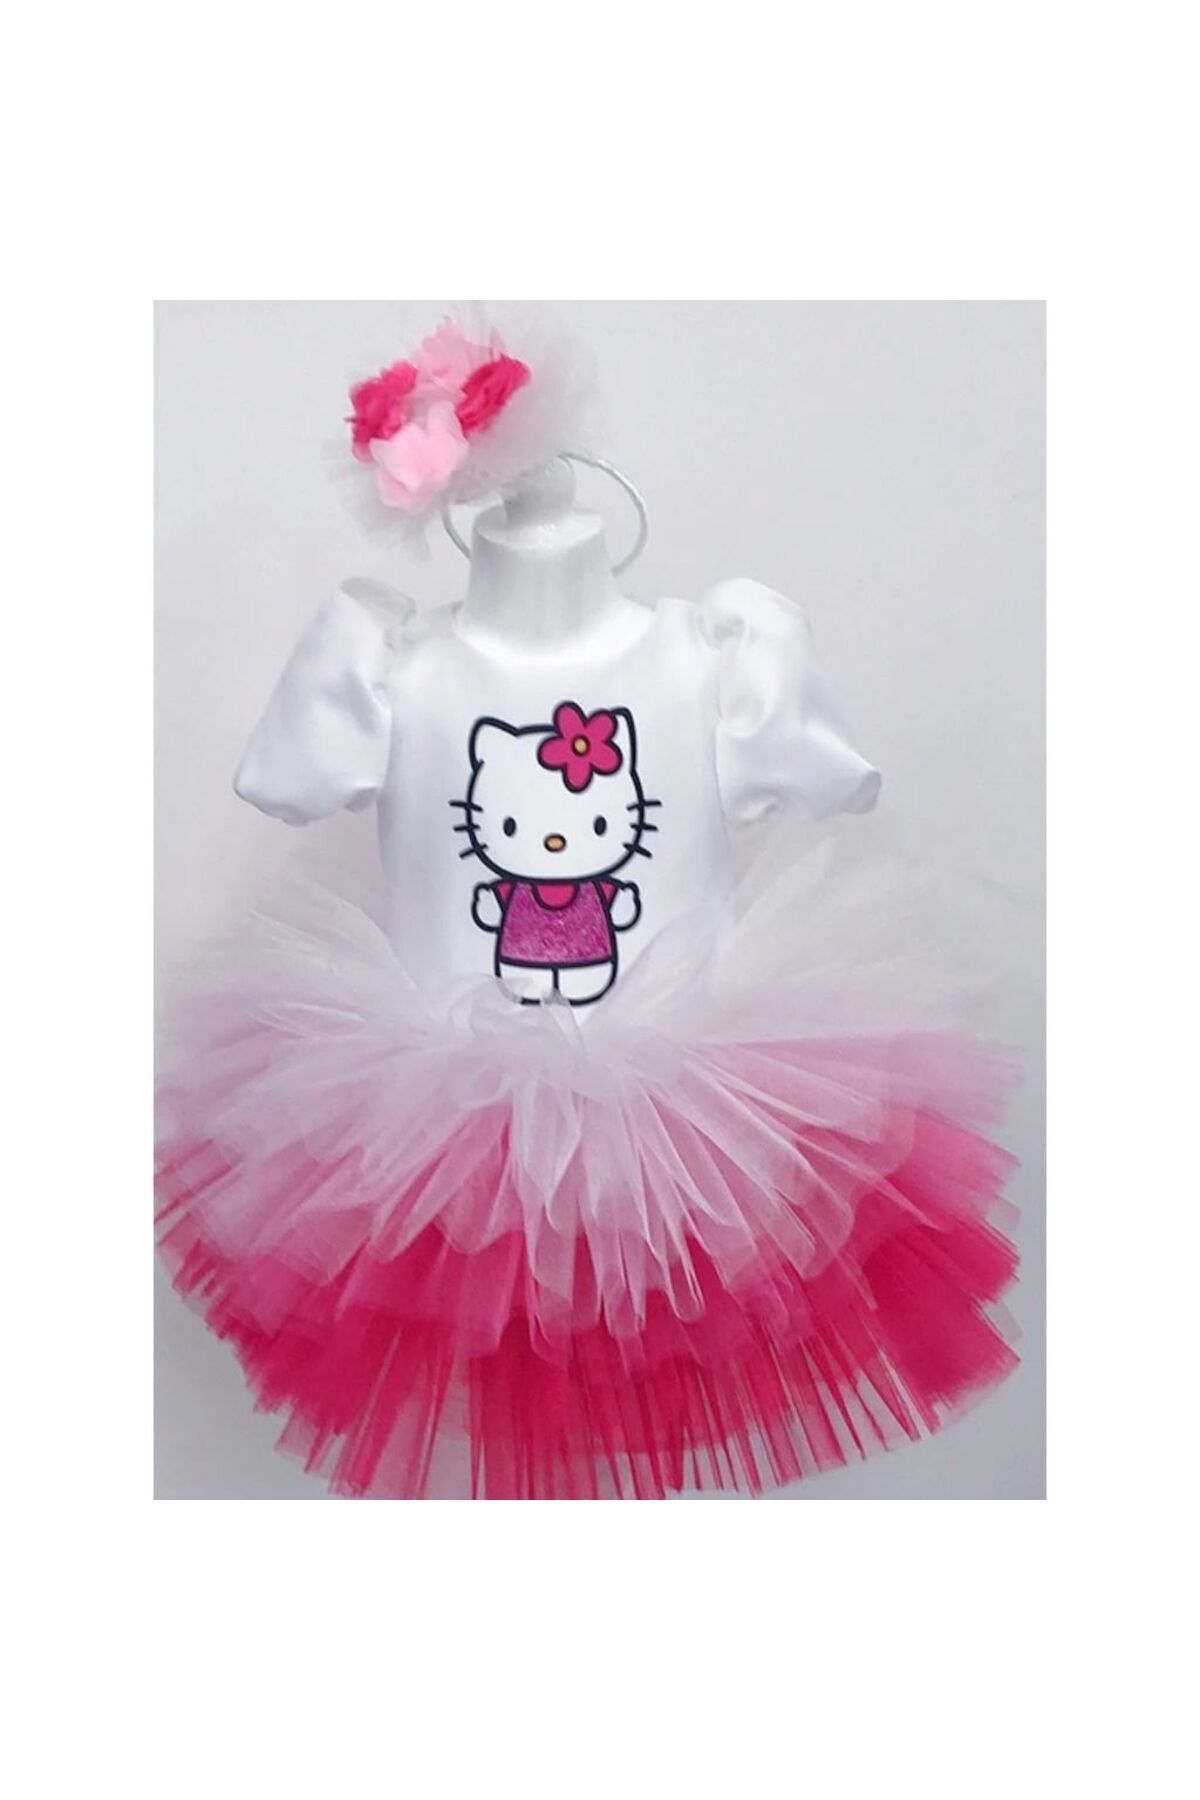 YAĞMUR KOStütüM Hello Kitty Baskılı Kız Çocuk Bebek Doğumgünü Elbise Parti Kostüm